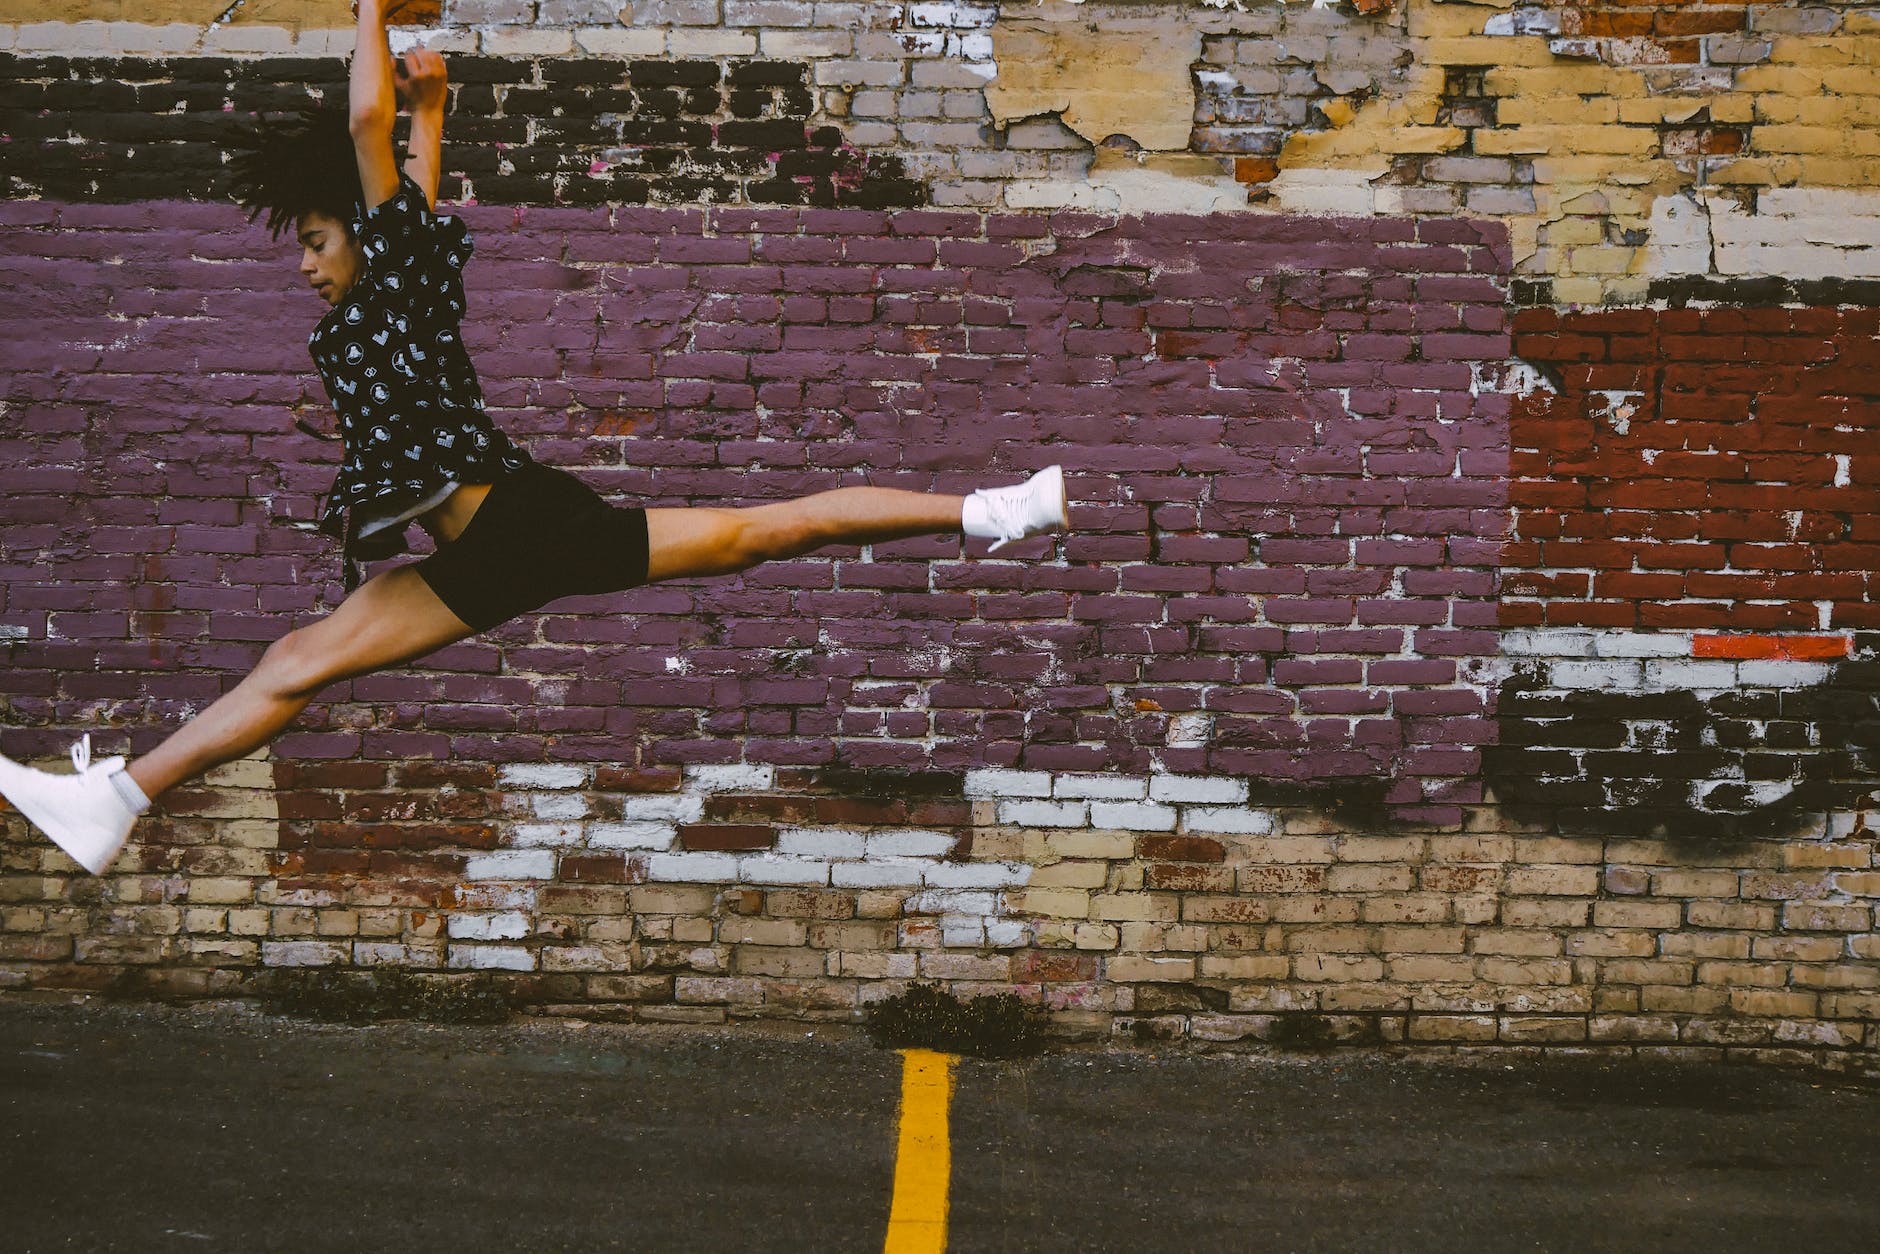 photo of person jumping near brick walls